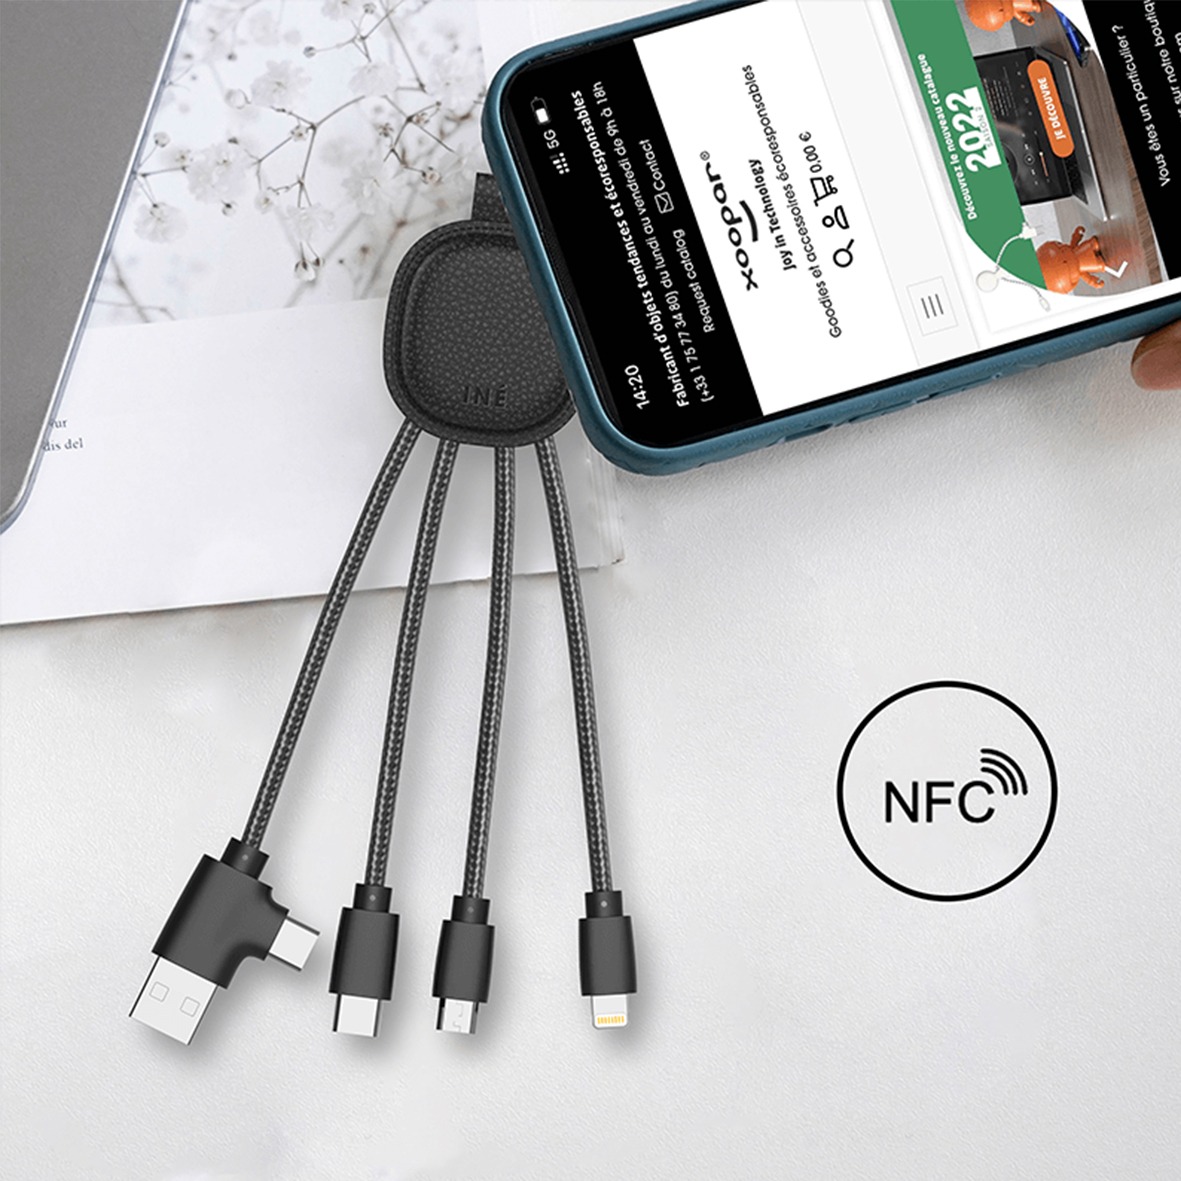 Cable xoopar ine smart NFC premium personnalise-4